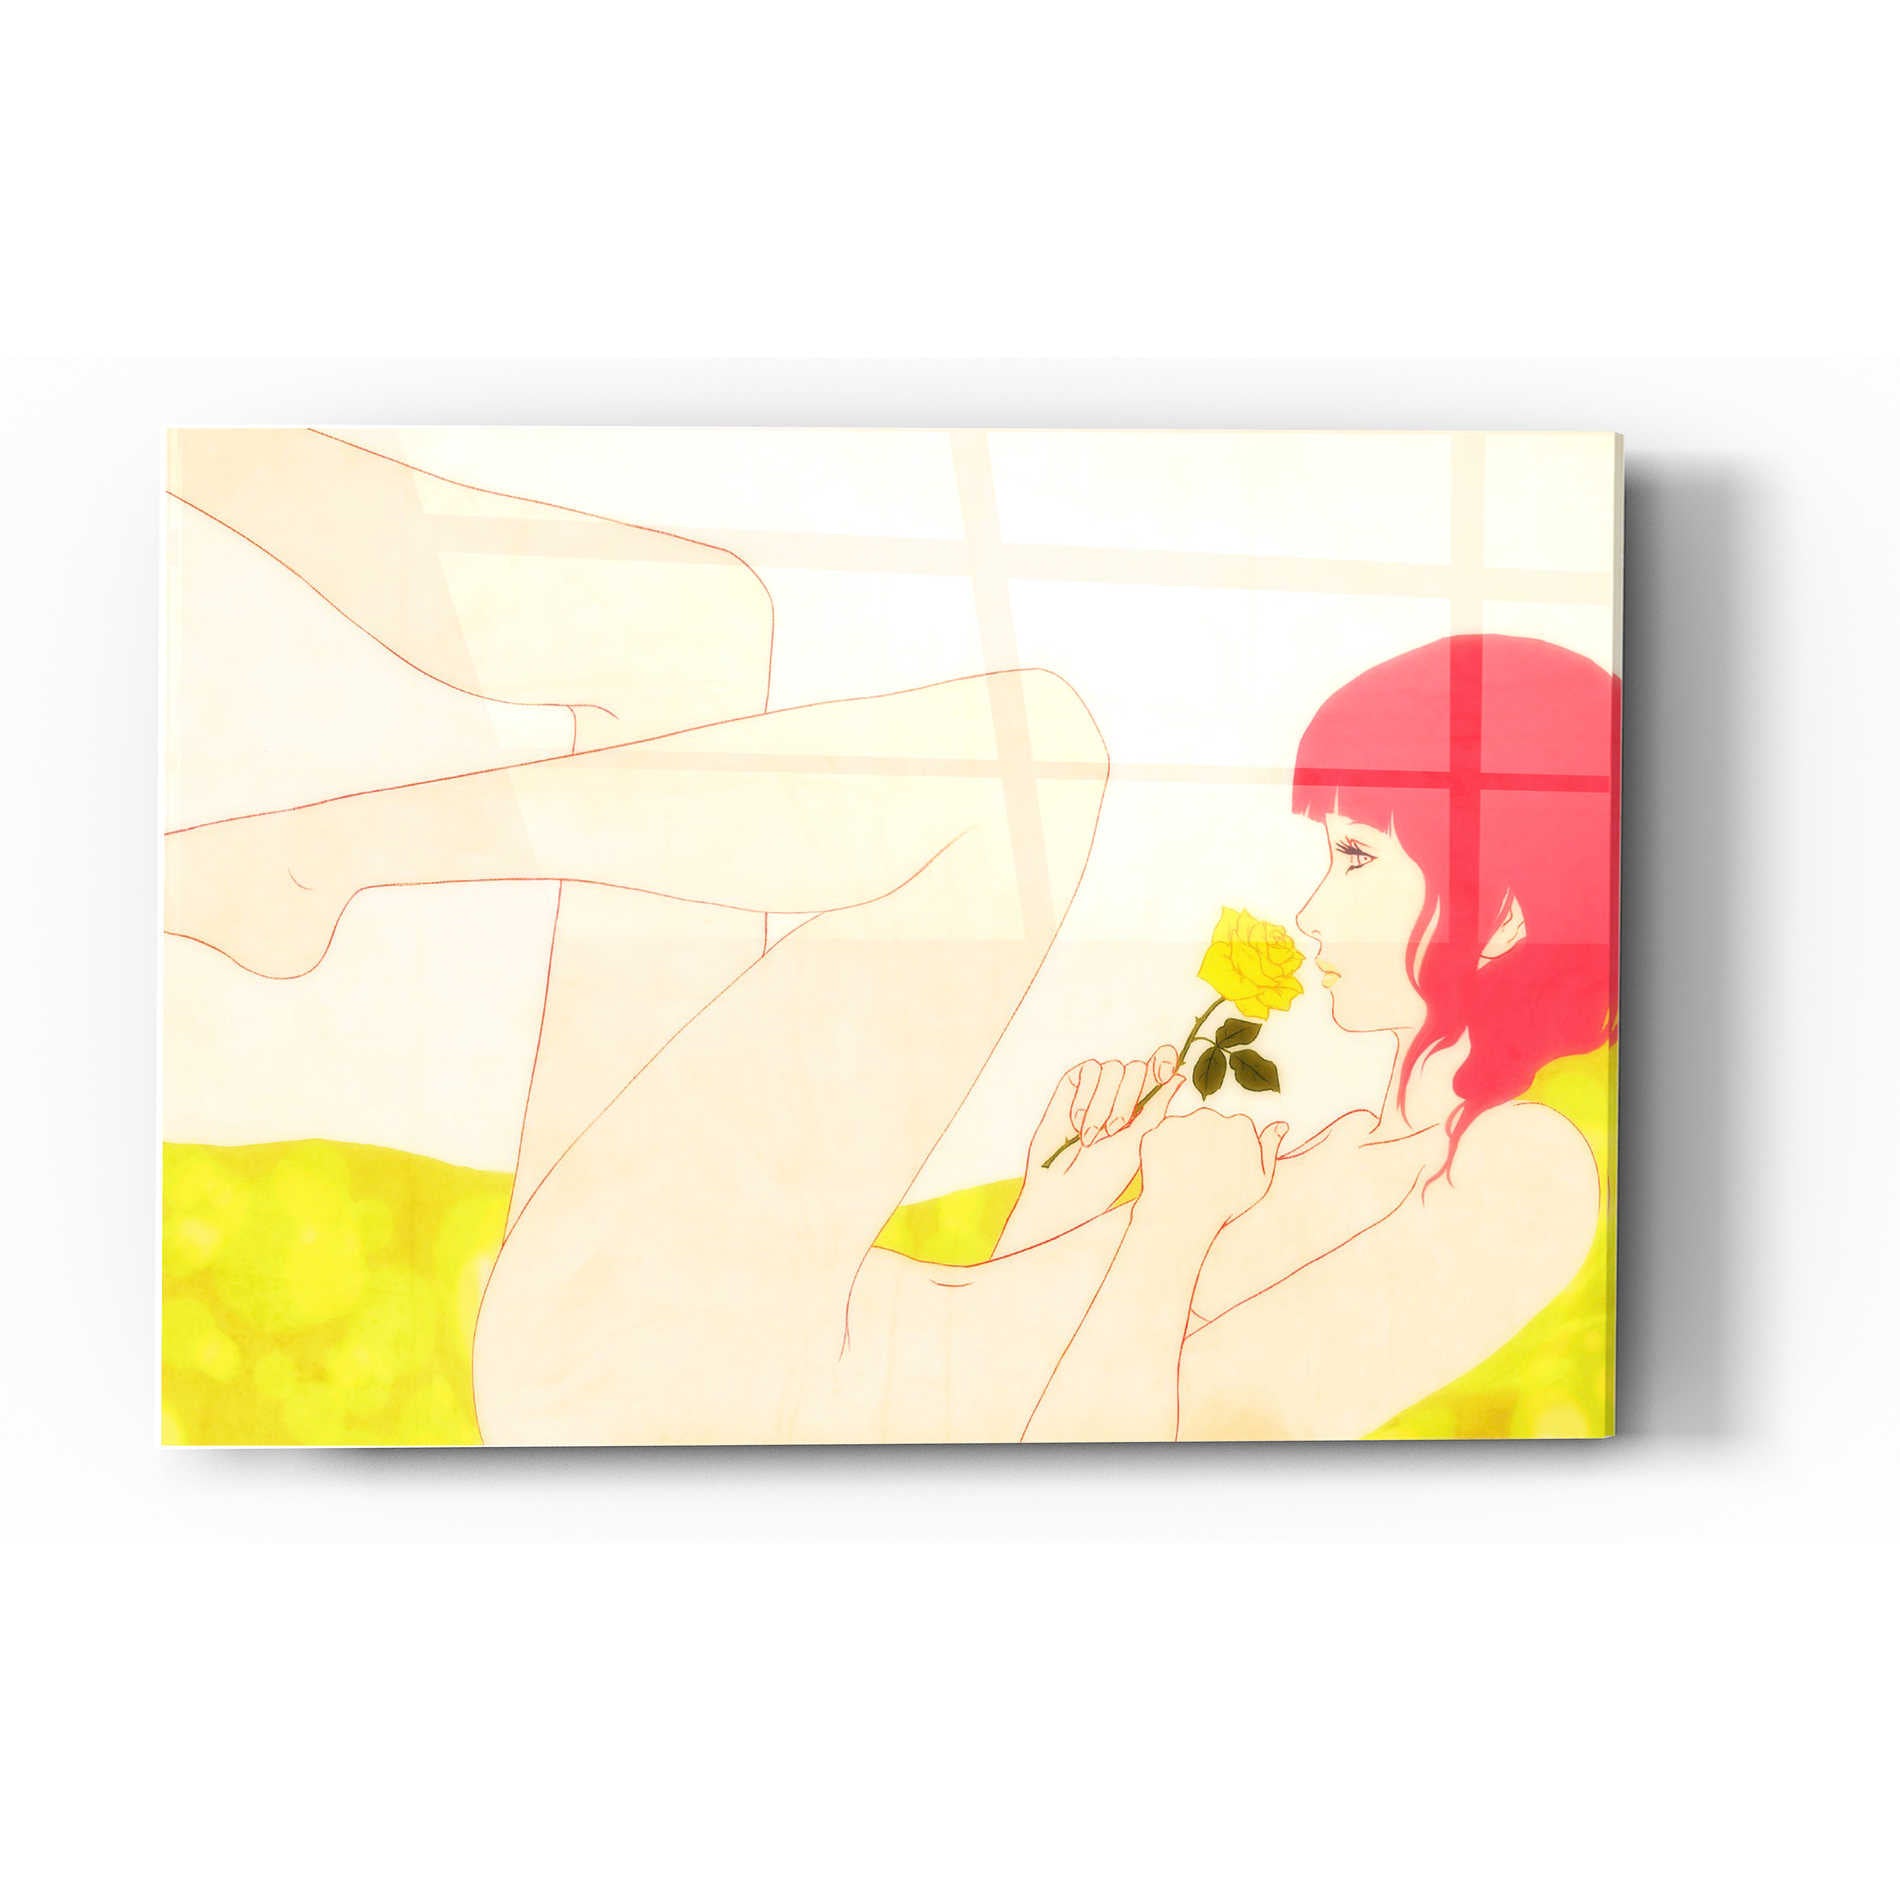 Epic Art 'A Rose And A Woman' by Sai Tamiya, Acrylic Glass Wall Art,24x36